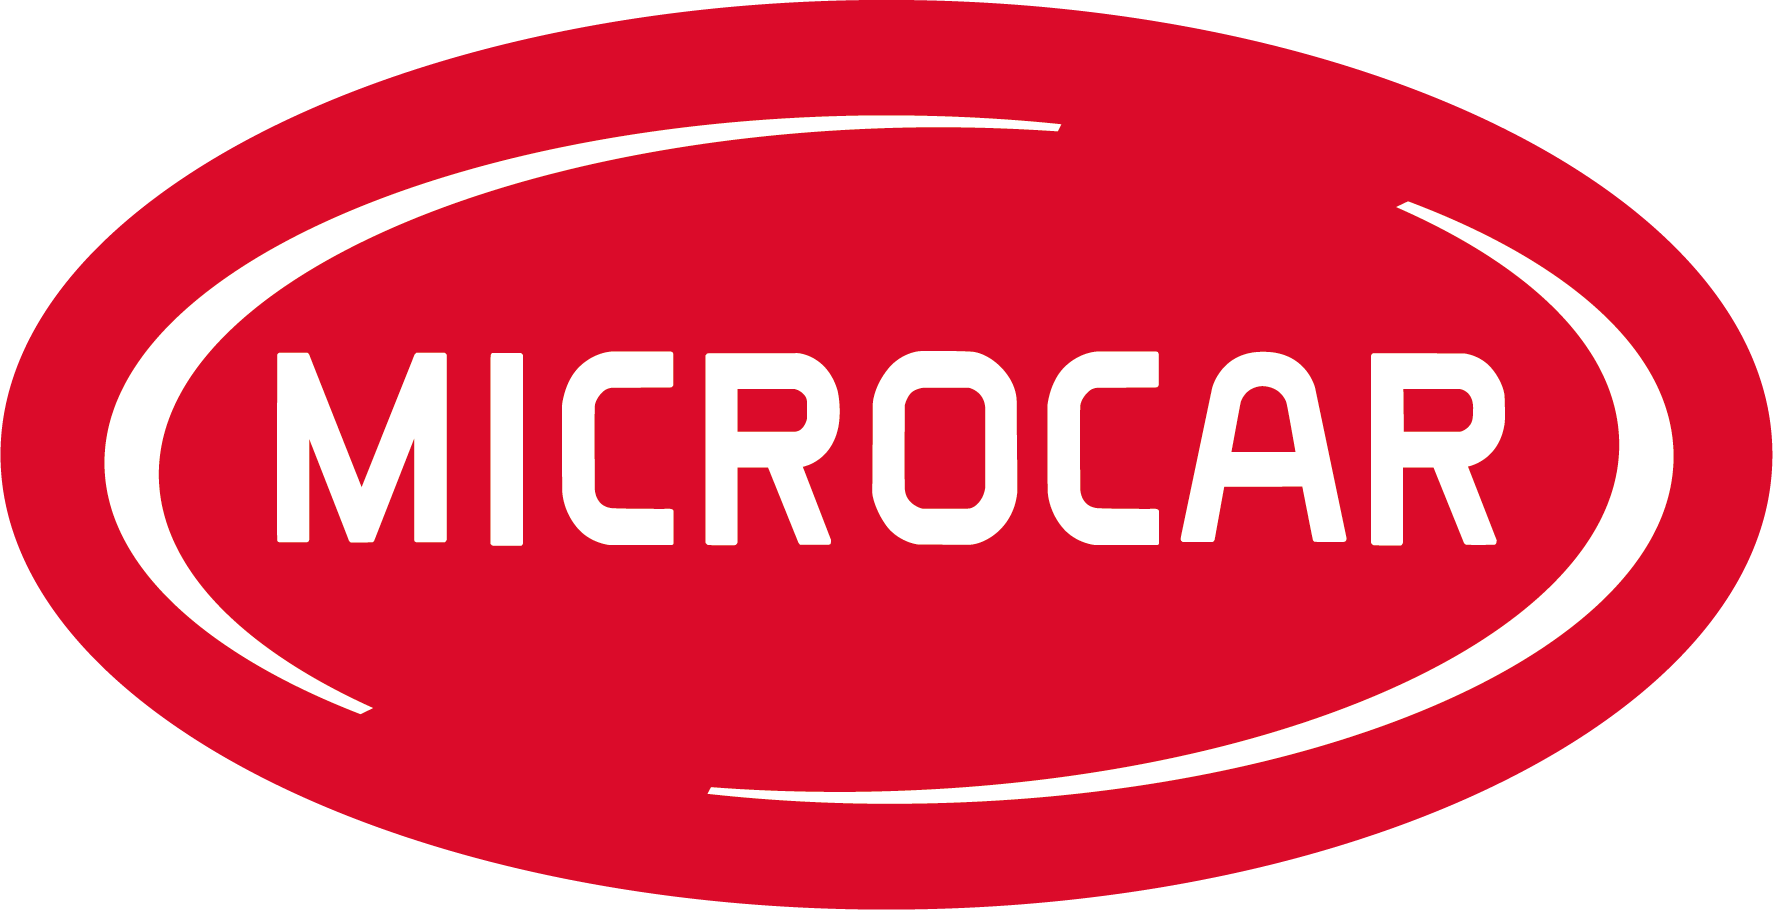 Microcar - zu den aktuellen Modellen